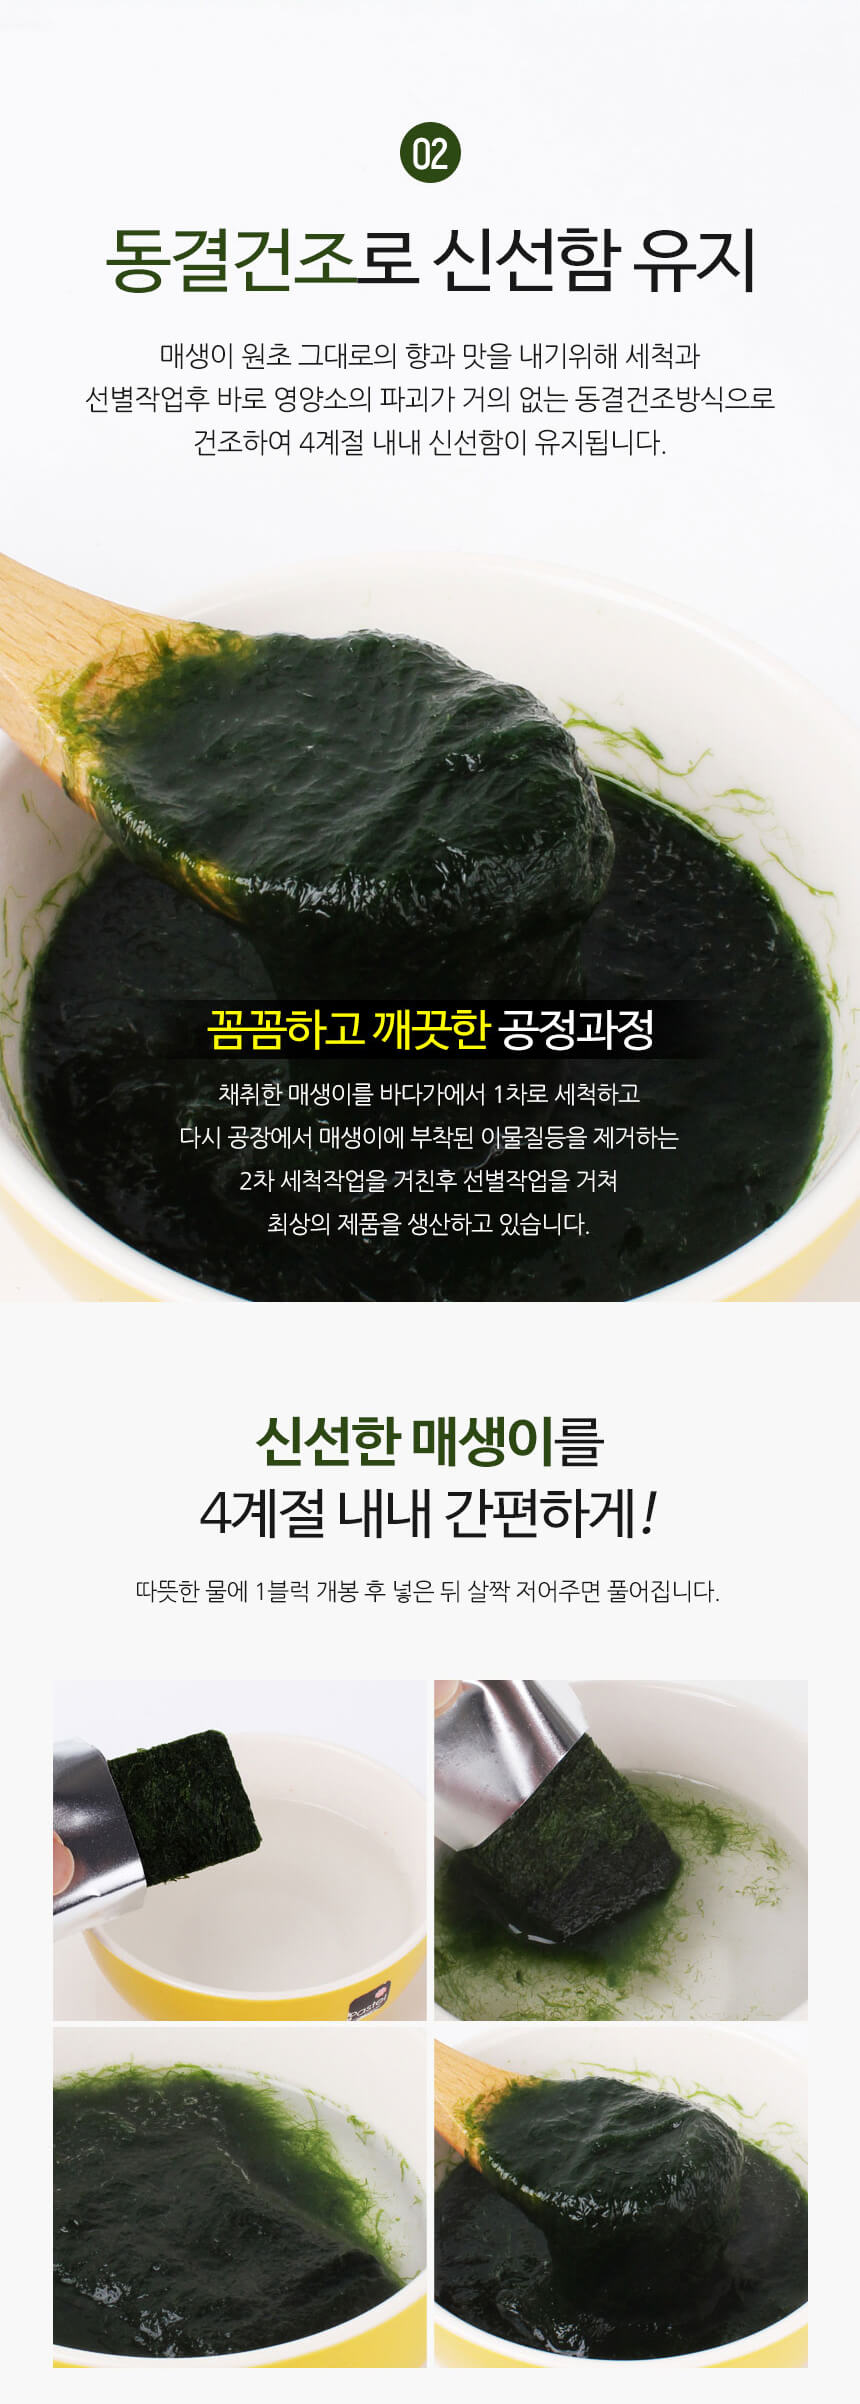 韓國食品-Haedream 乾海藻 20包